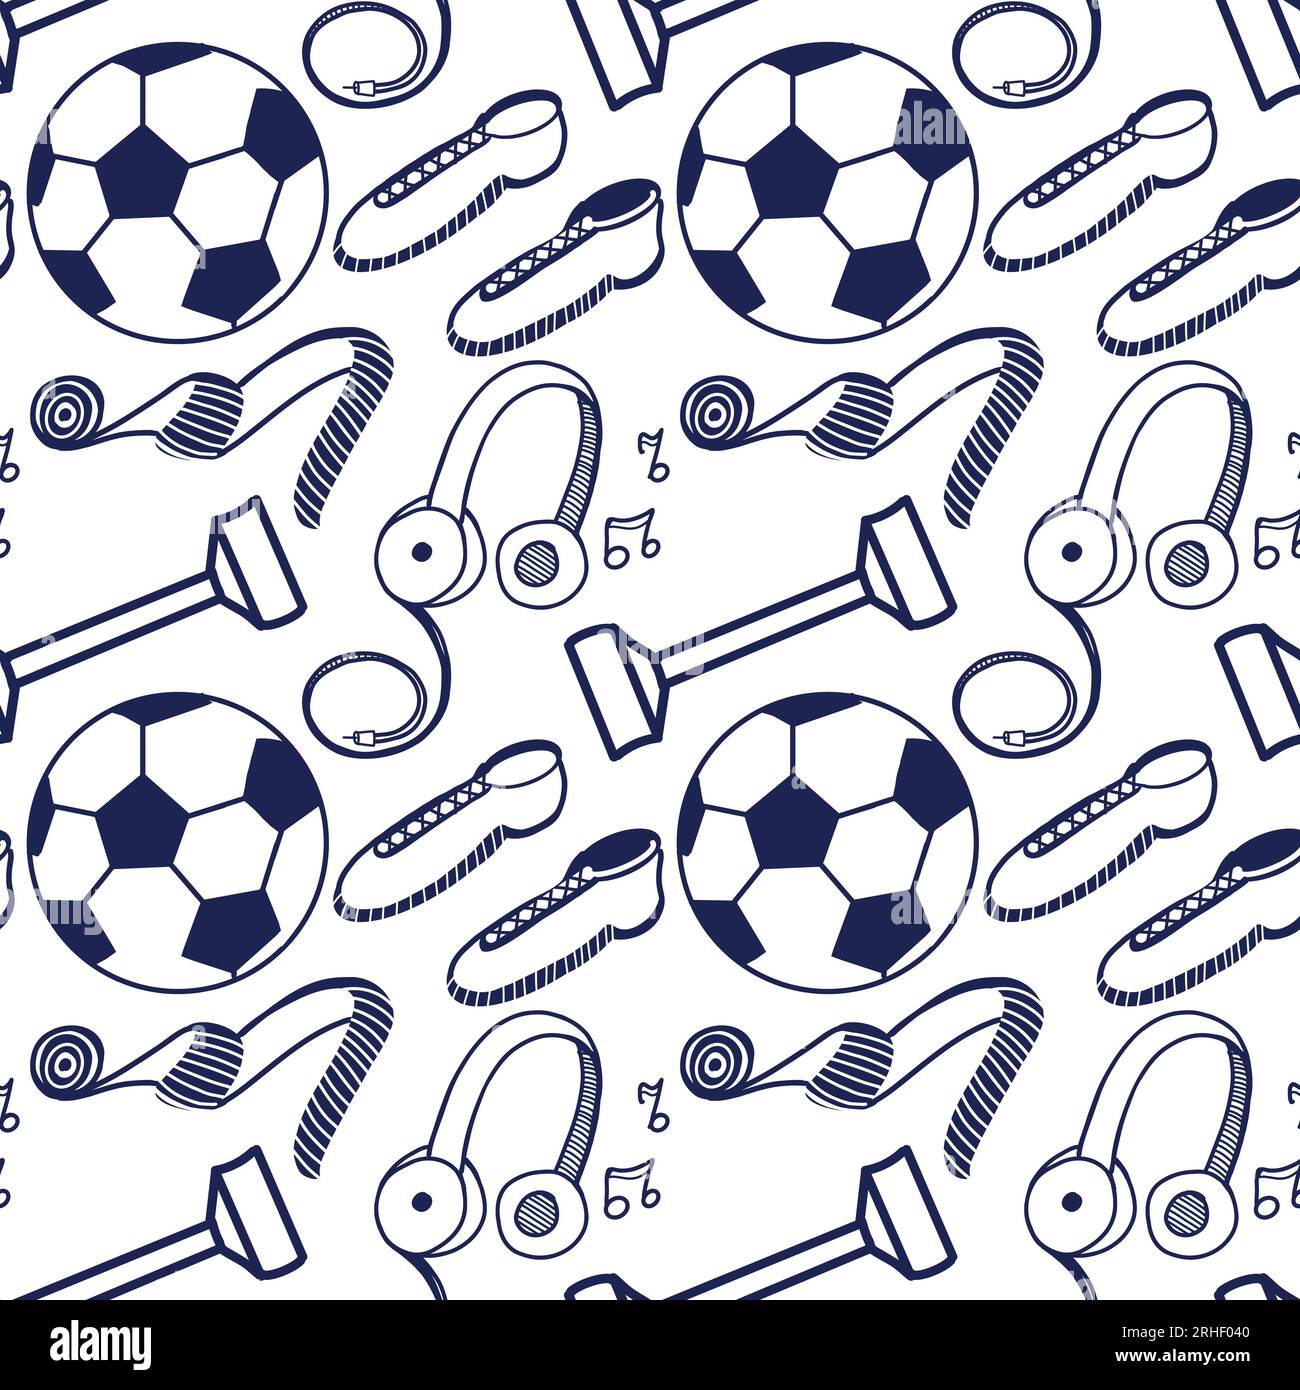 Pattern vettoriale senza interruzioni su sfondo bianco. Attrezzature sportive, palle, manubri, cuffie, sneakers disegnate in blu su un tablet. Illustrazione Vettoriale